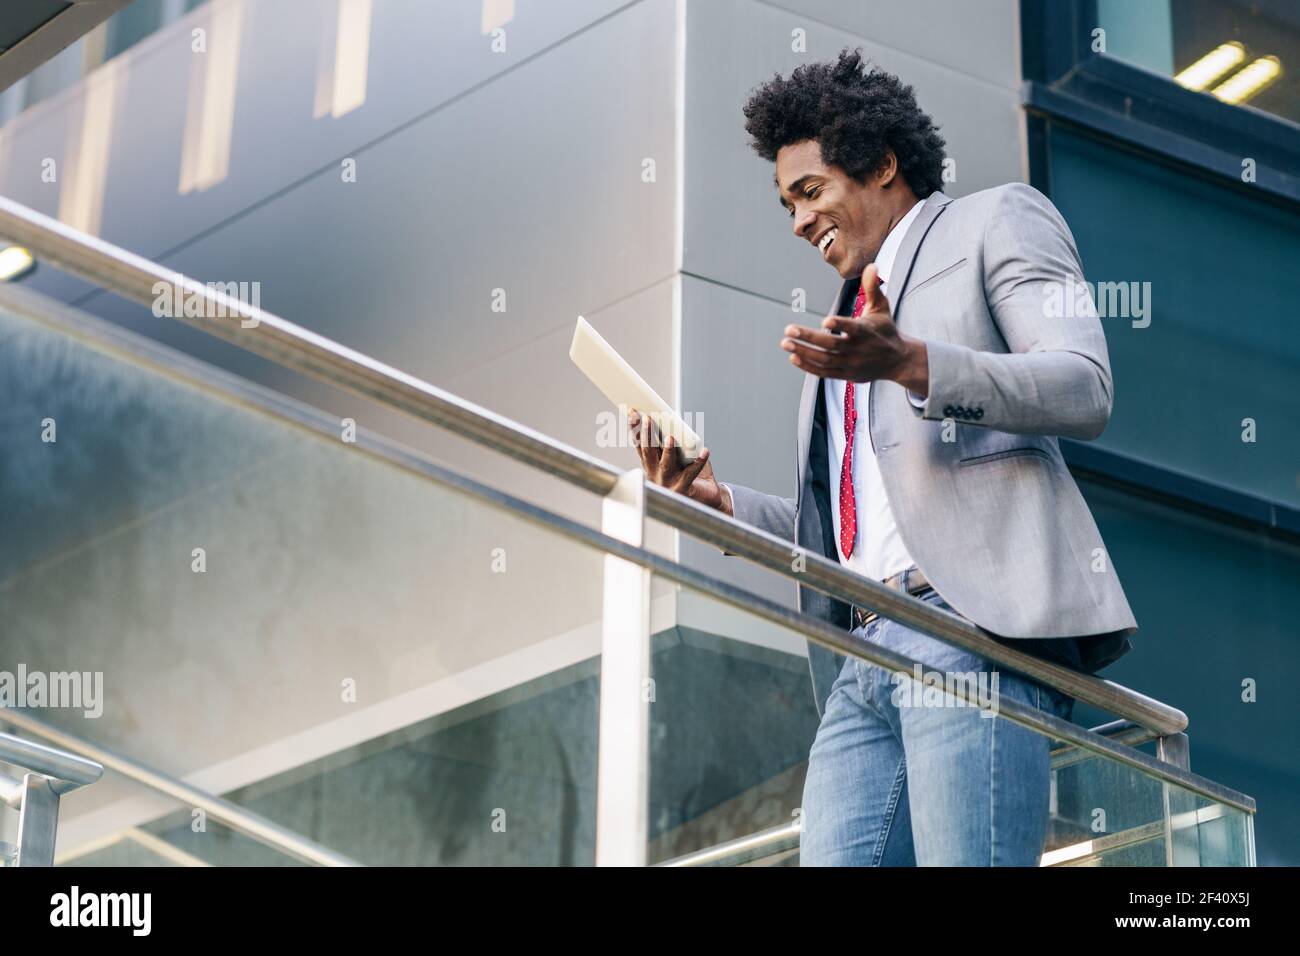 Homme d'affaires noir utilisant une tablette numérique assis près d'un immeuble de bureaux. Homme avec cheveux afro.. Homme d'affaires noir utilisant une tablette numérique assis près d'un immeuble de bureaux. Banque D'Images